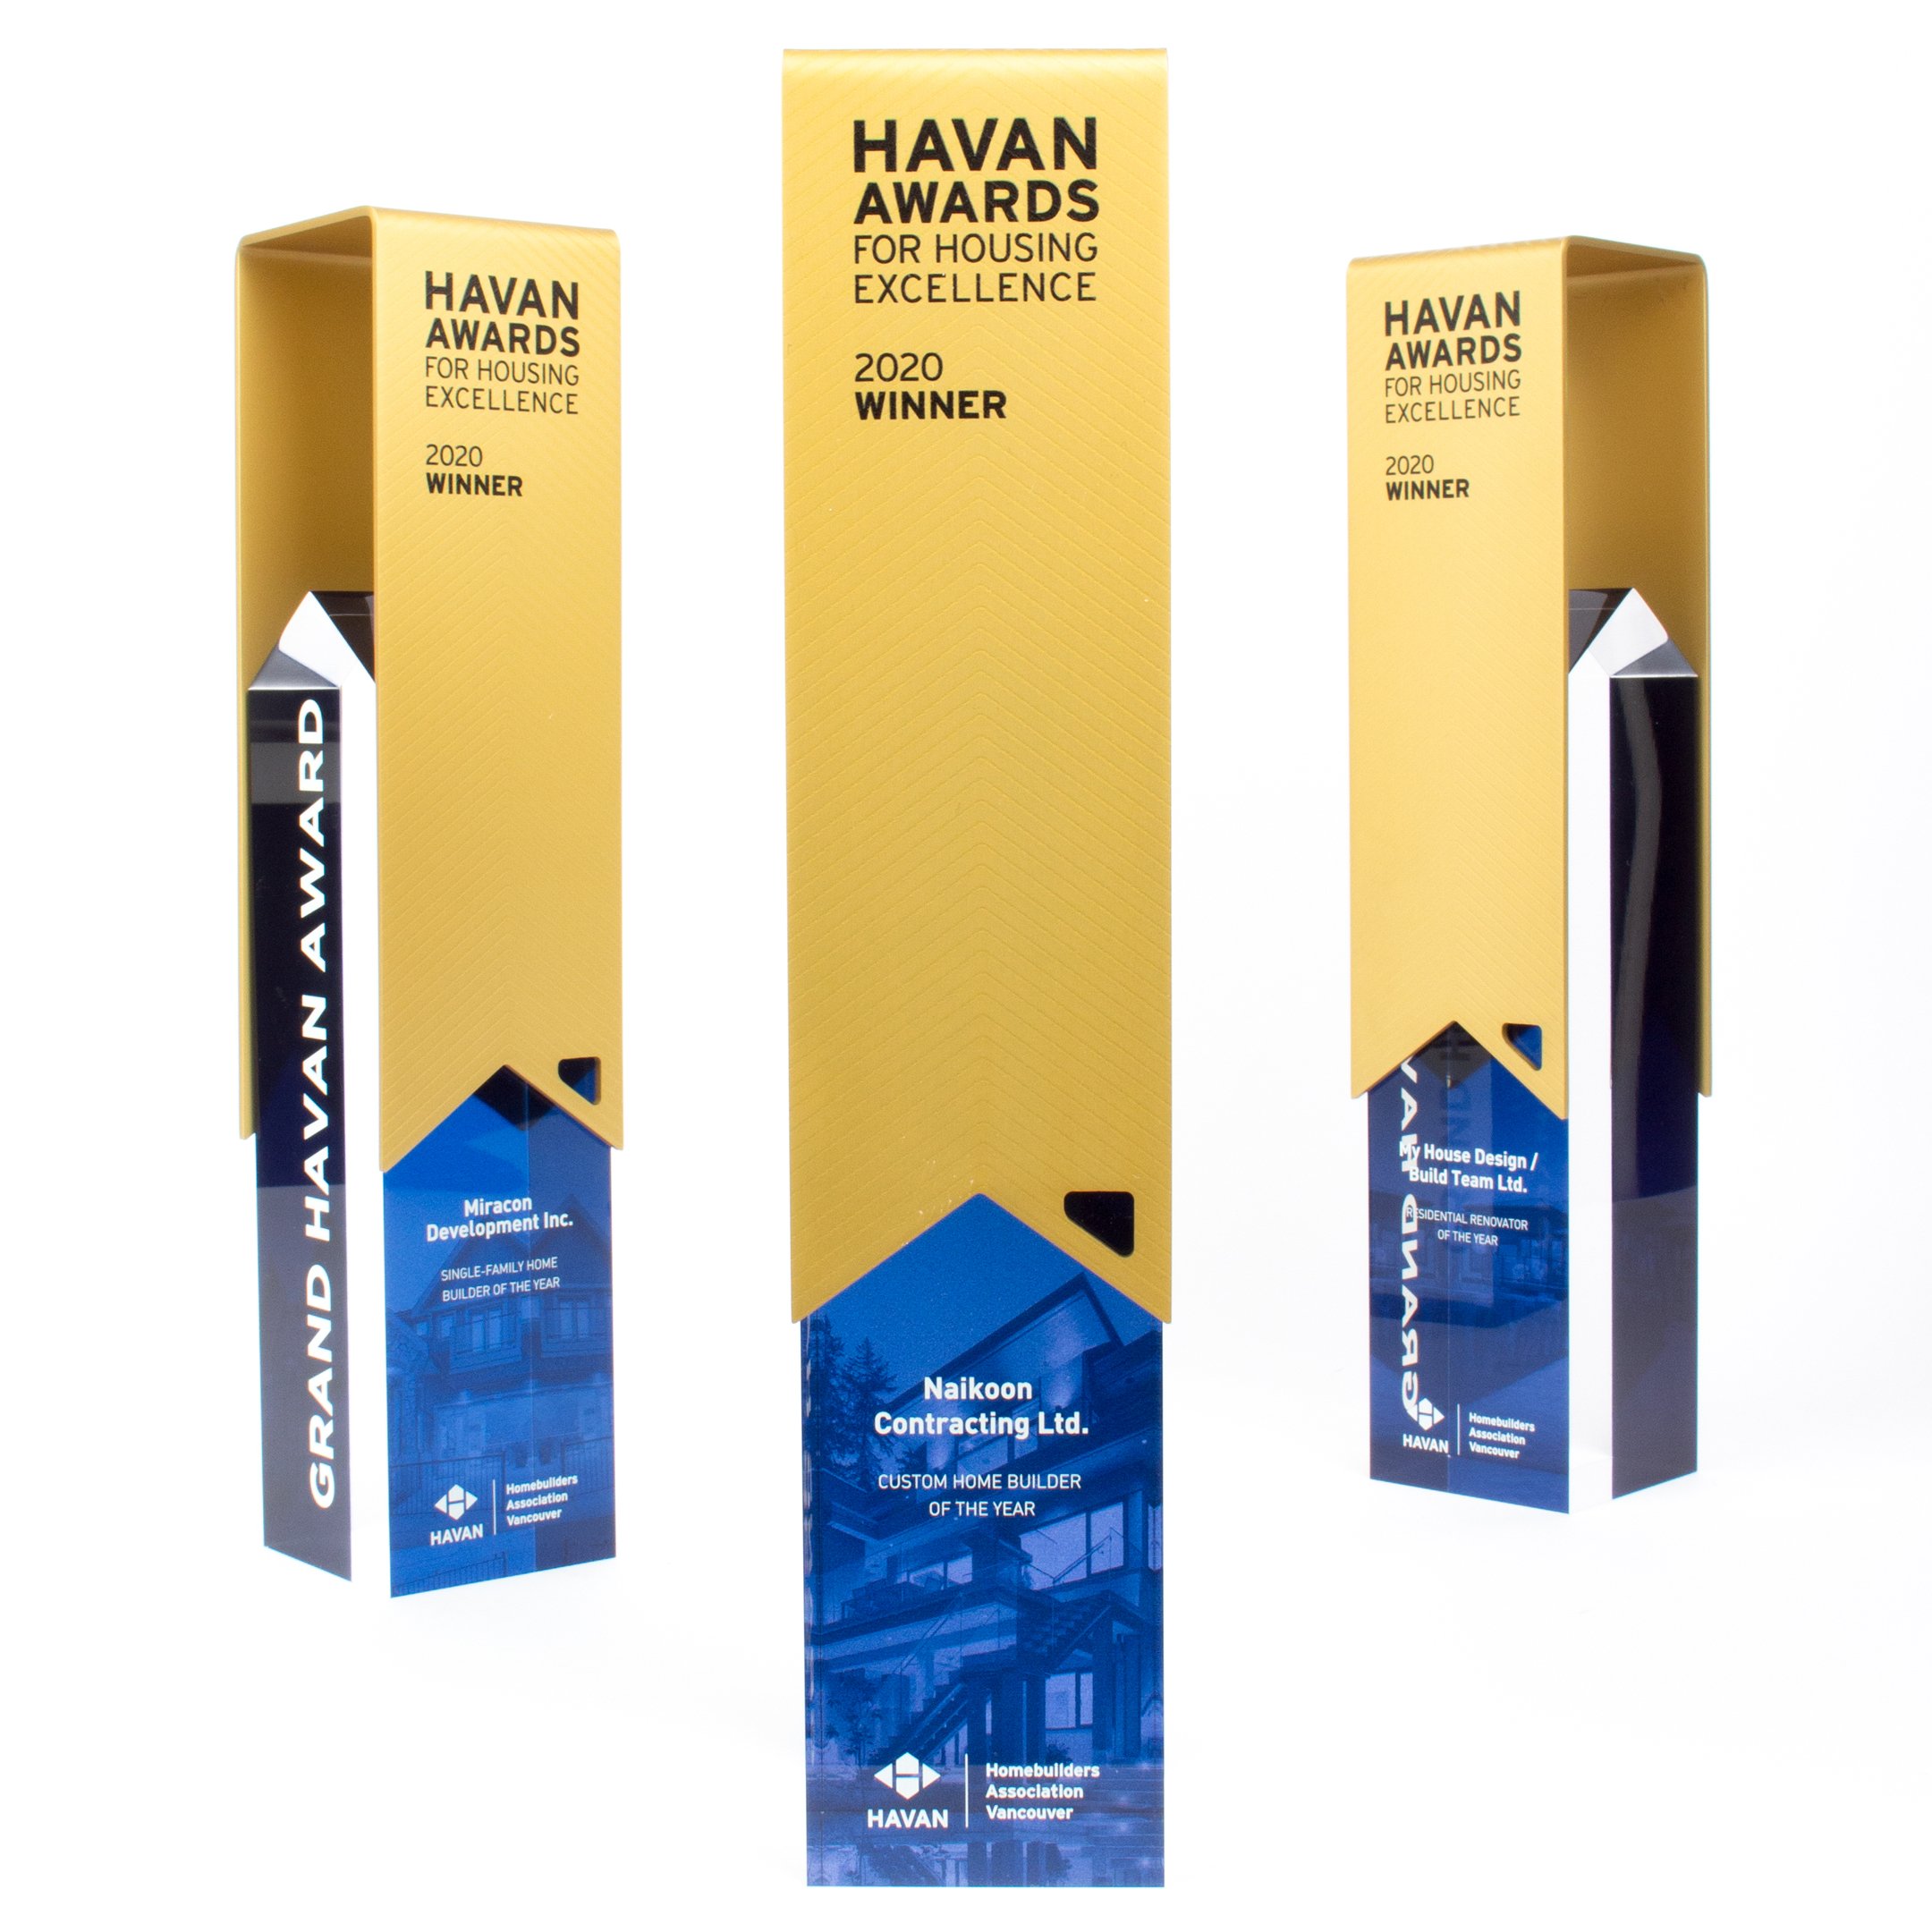 HAVAN-awards-for-housing-excellence-custom-design